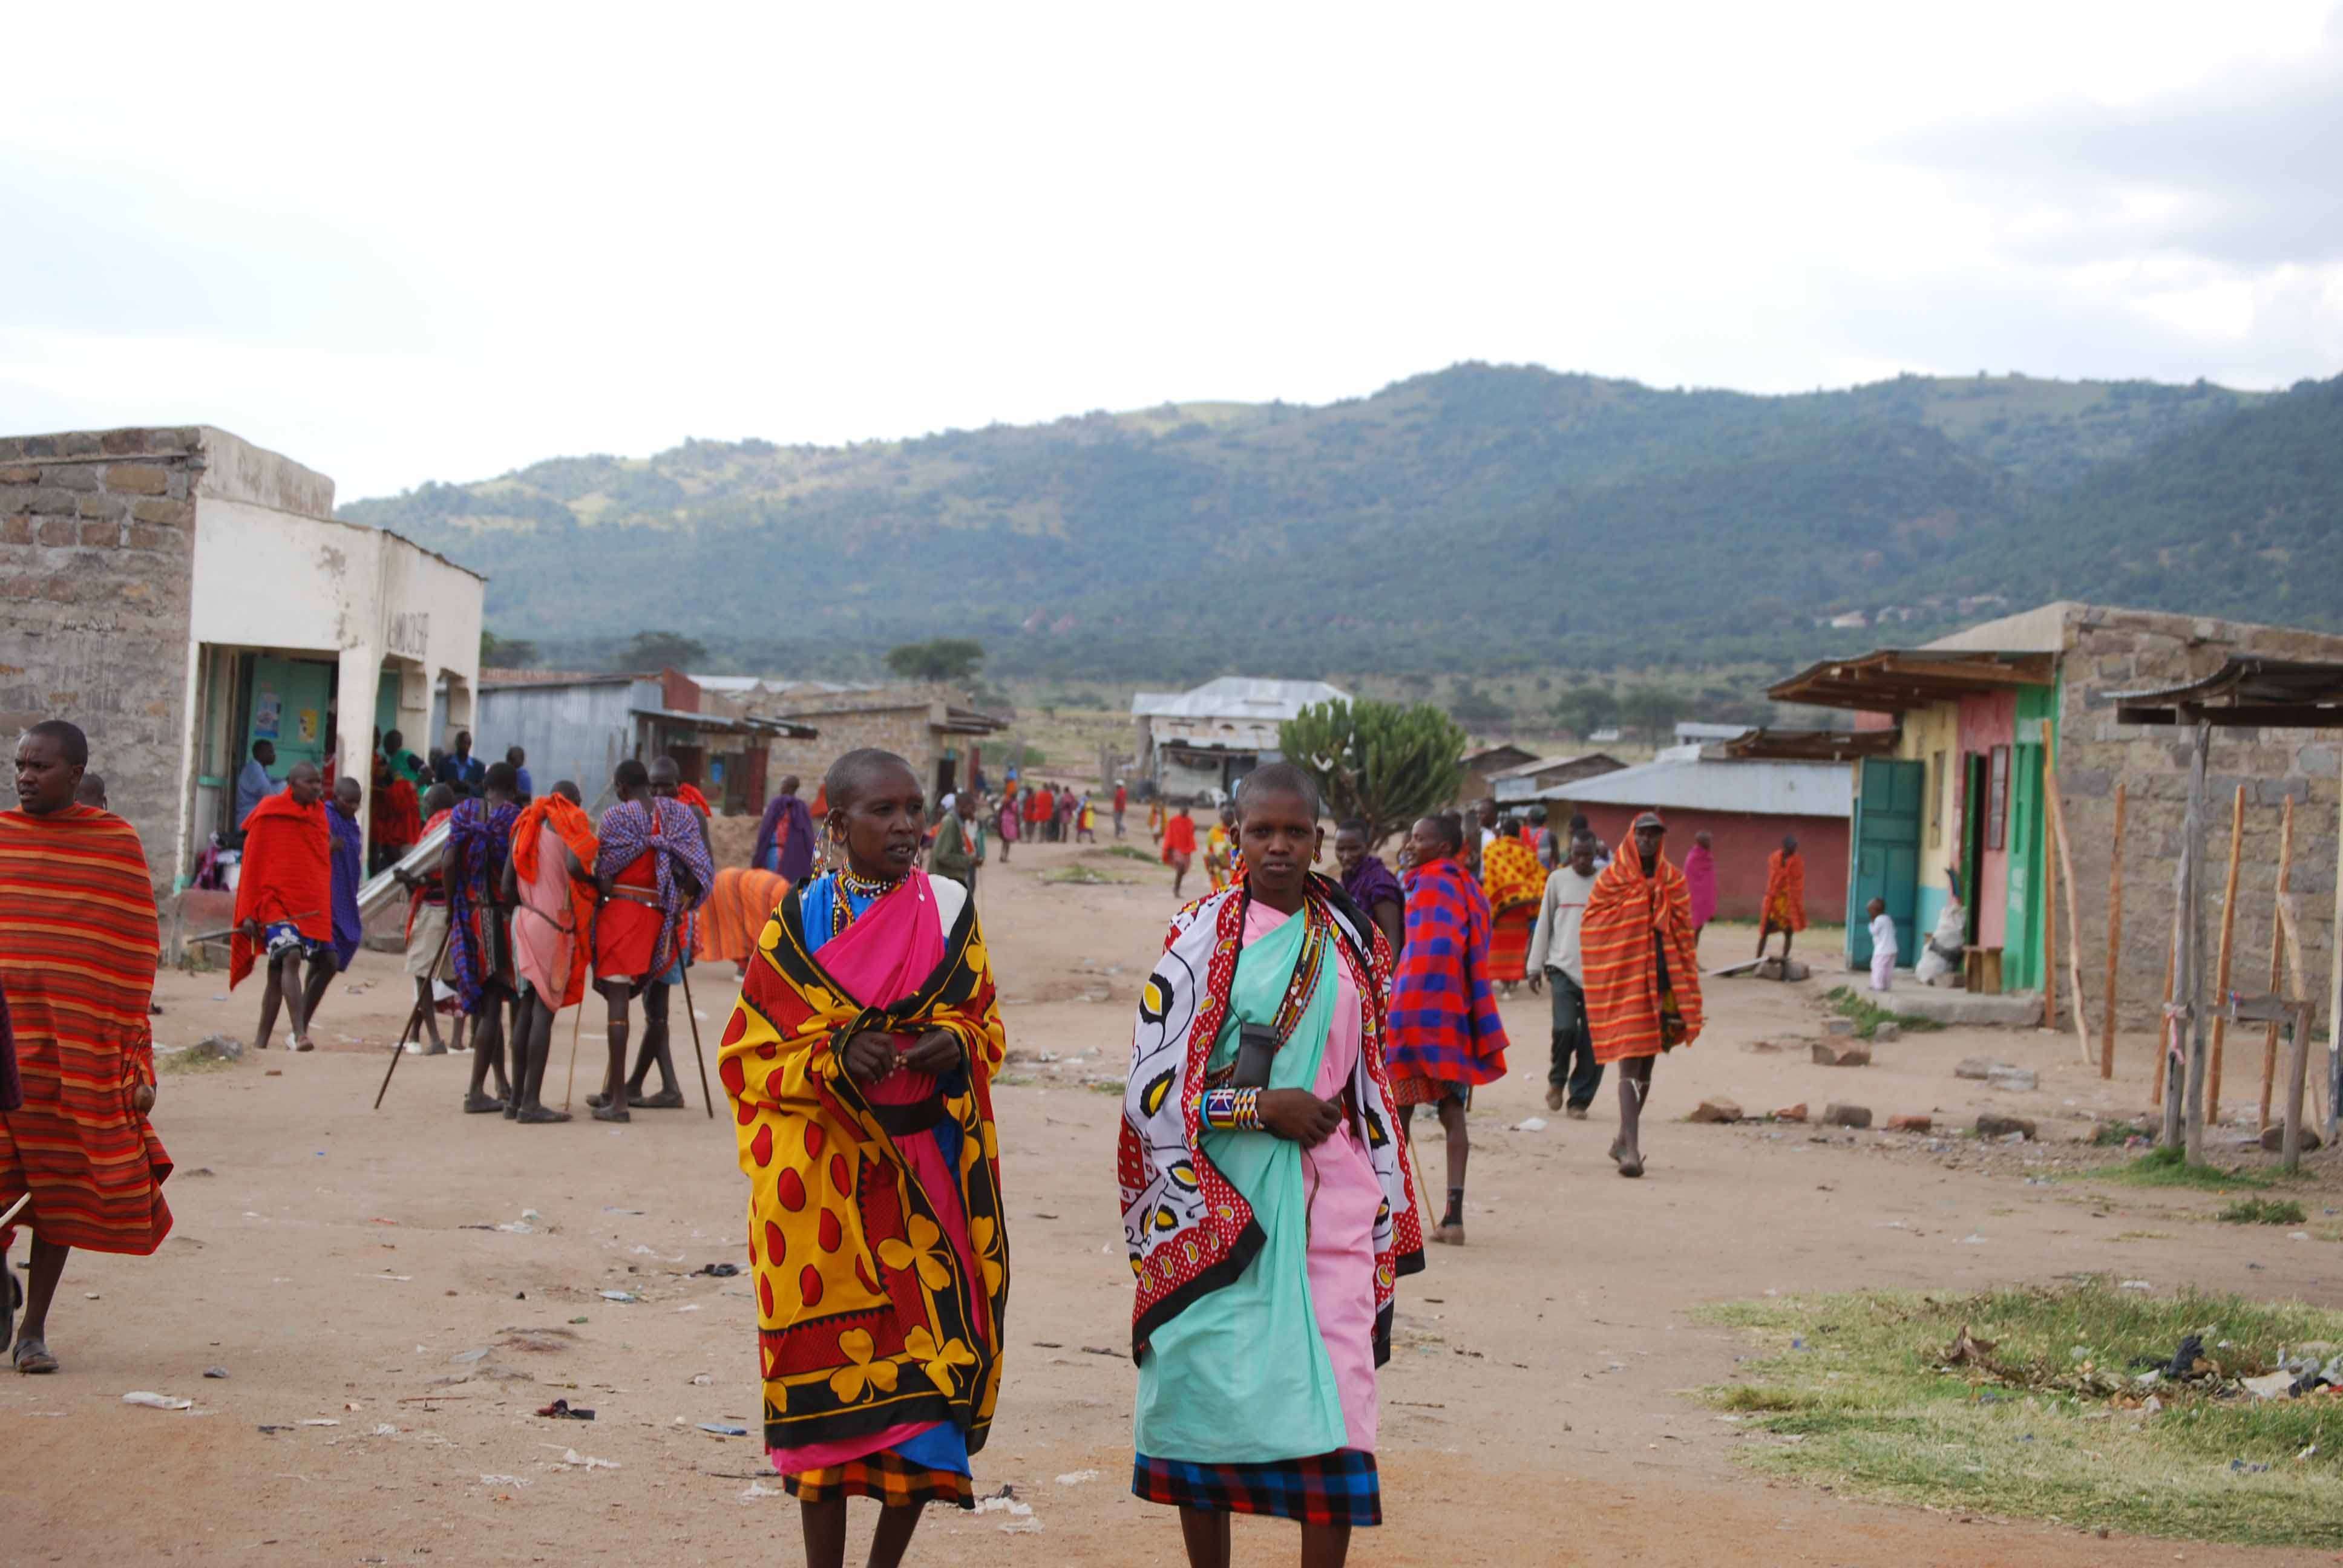 El mercado masai, un intento fallido de ver el cruce y algunas mariposas - Regreso al Mara - Kenia (22)